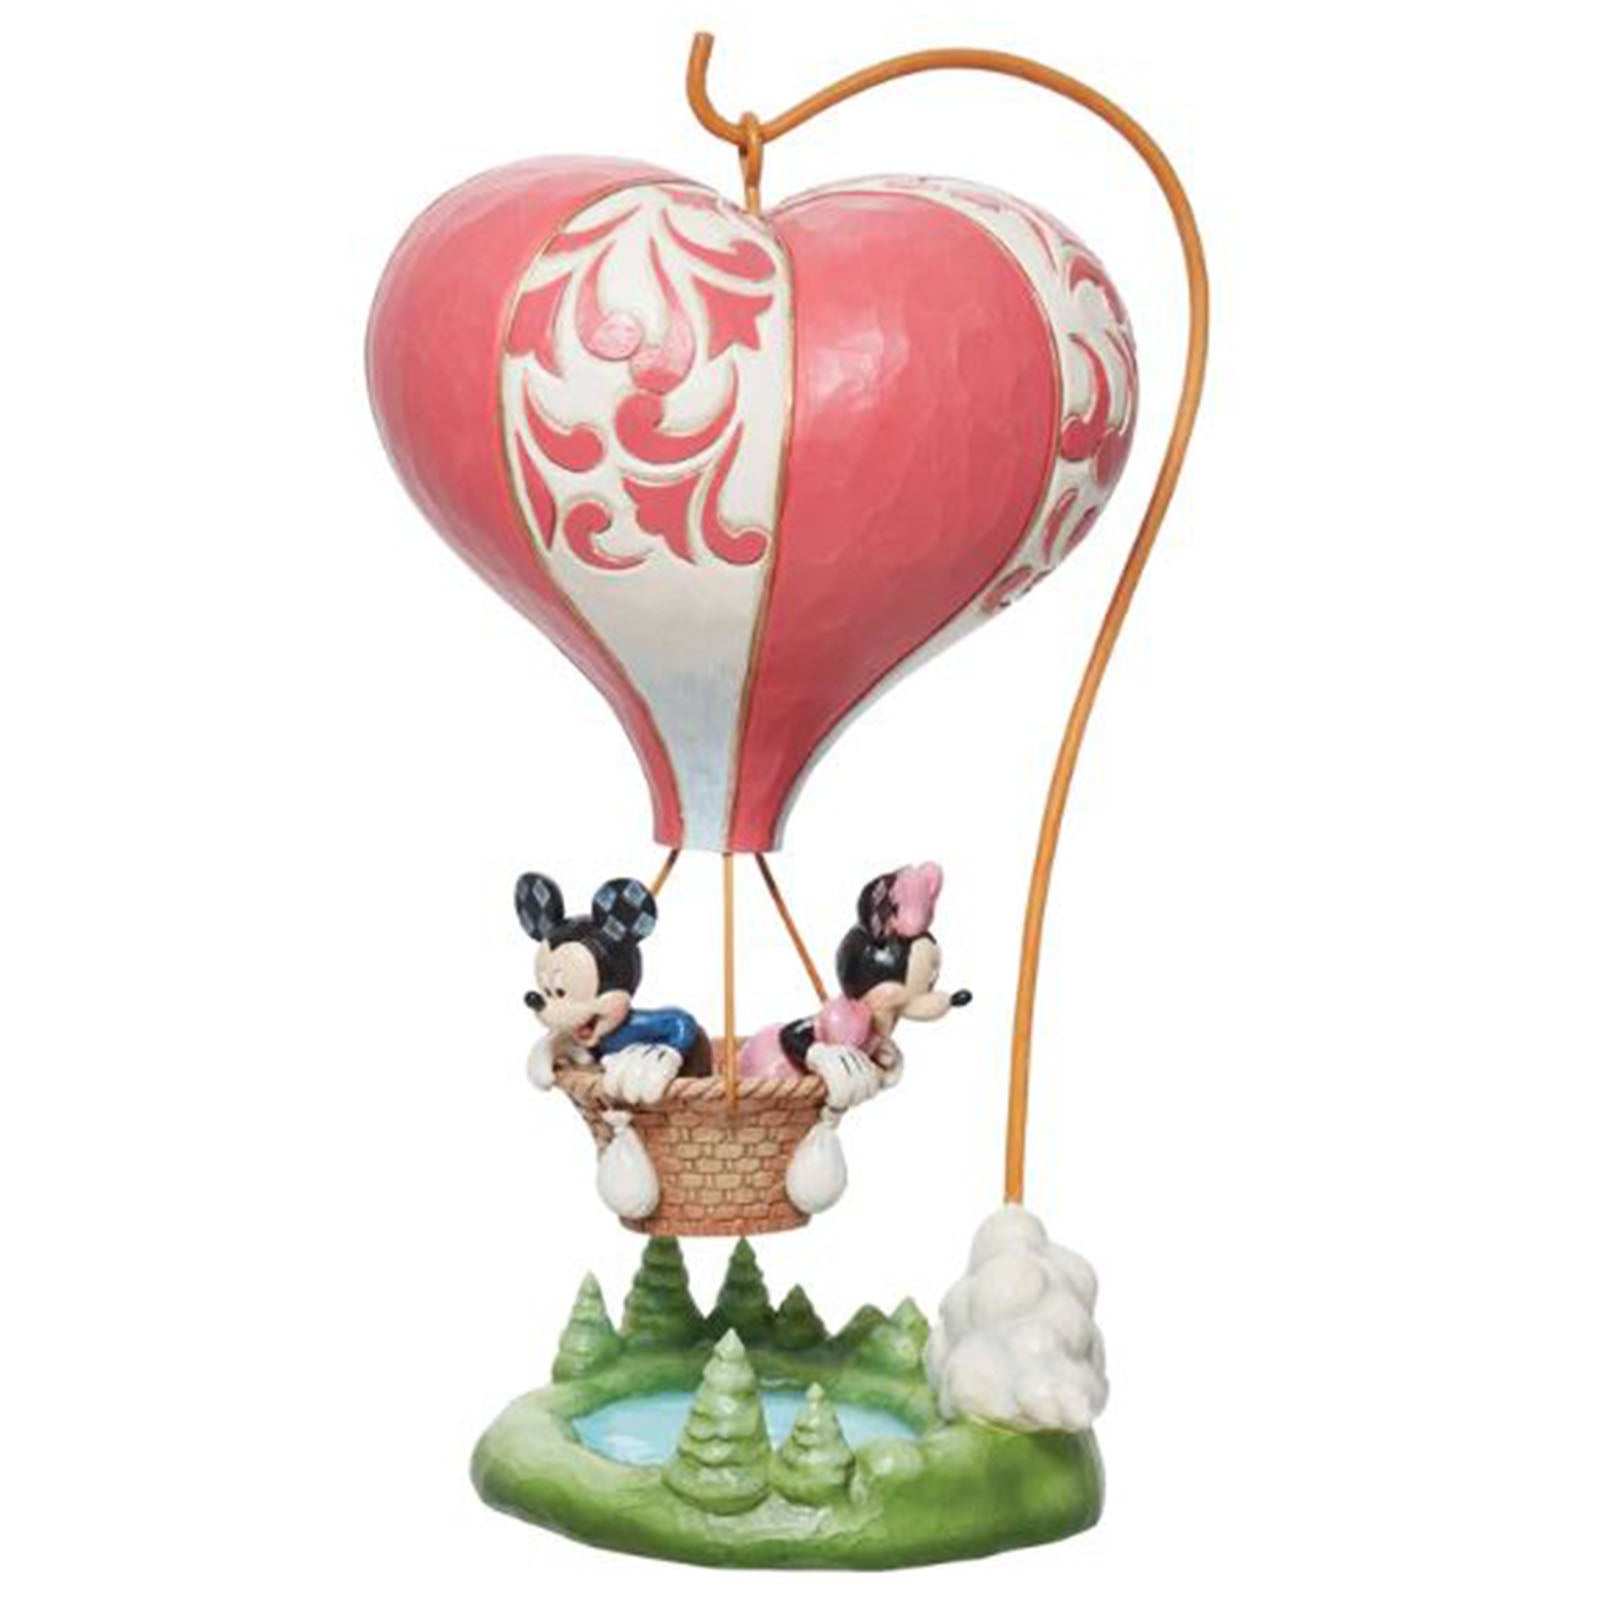 Enesco Disney Traditions Mickey Minnie Heart Balloon Love Takes